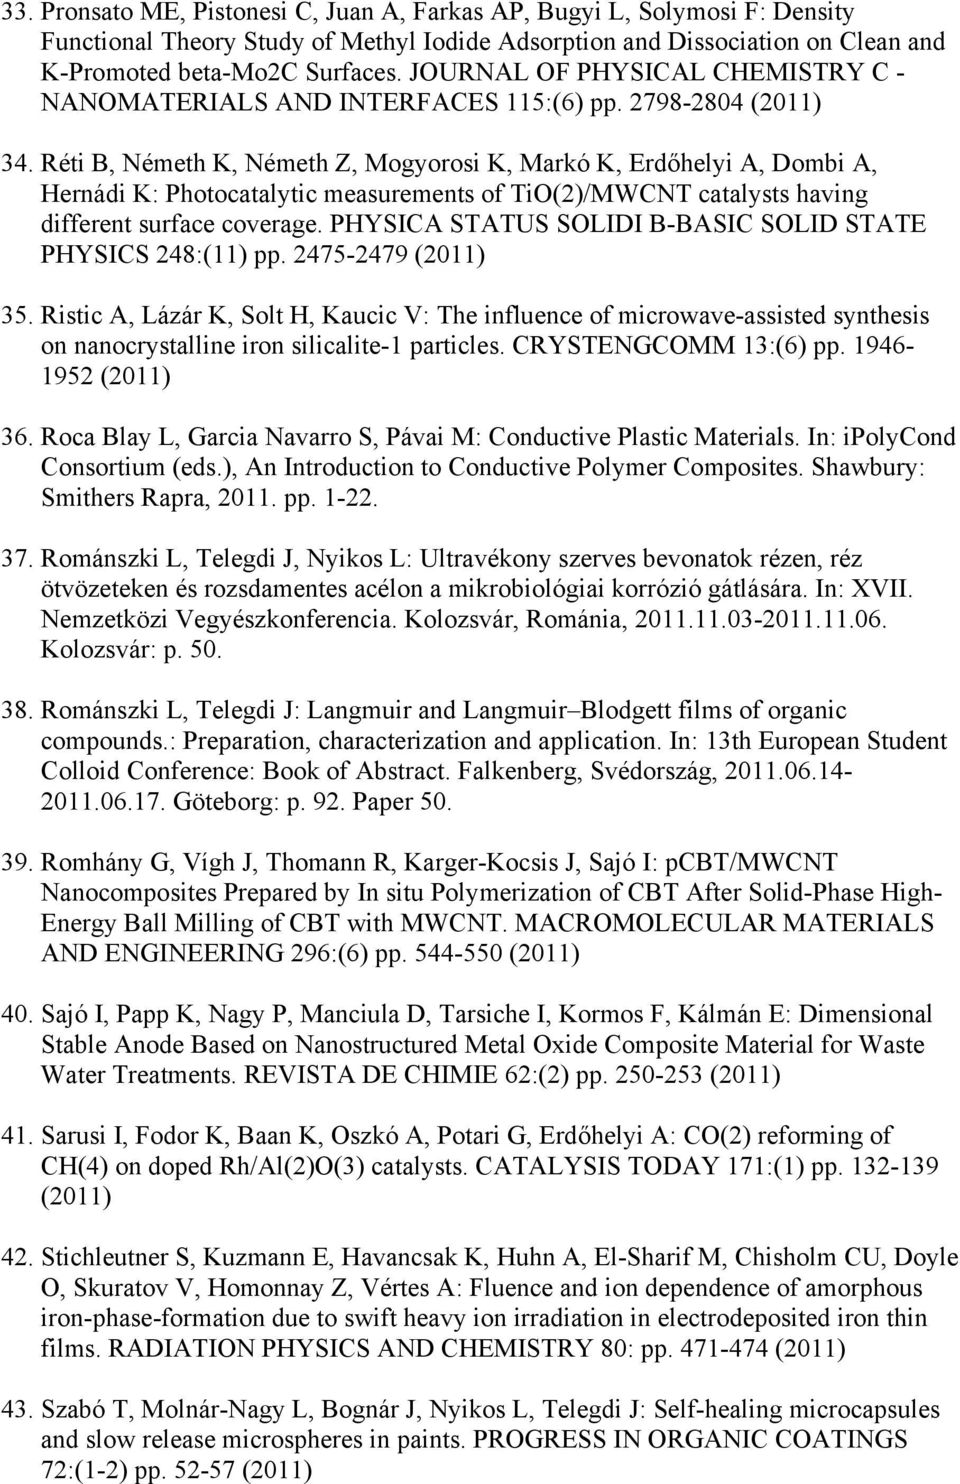 Réti B, Németh K, Németh Z, Mogyorosi K, Markó K, Erdőhelyi A, Dombi A, Hernádi K: Photocatalytic measurements of TiO(2)/MWCNT catalysts having different surface coverage.